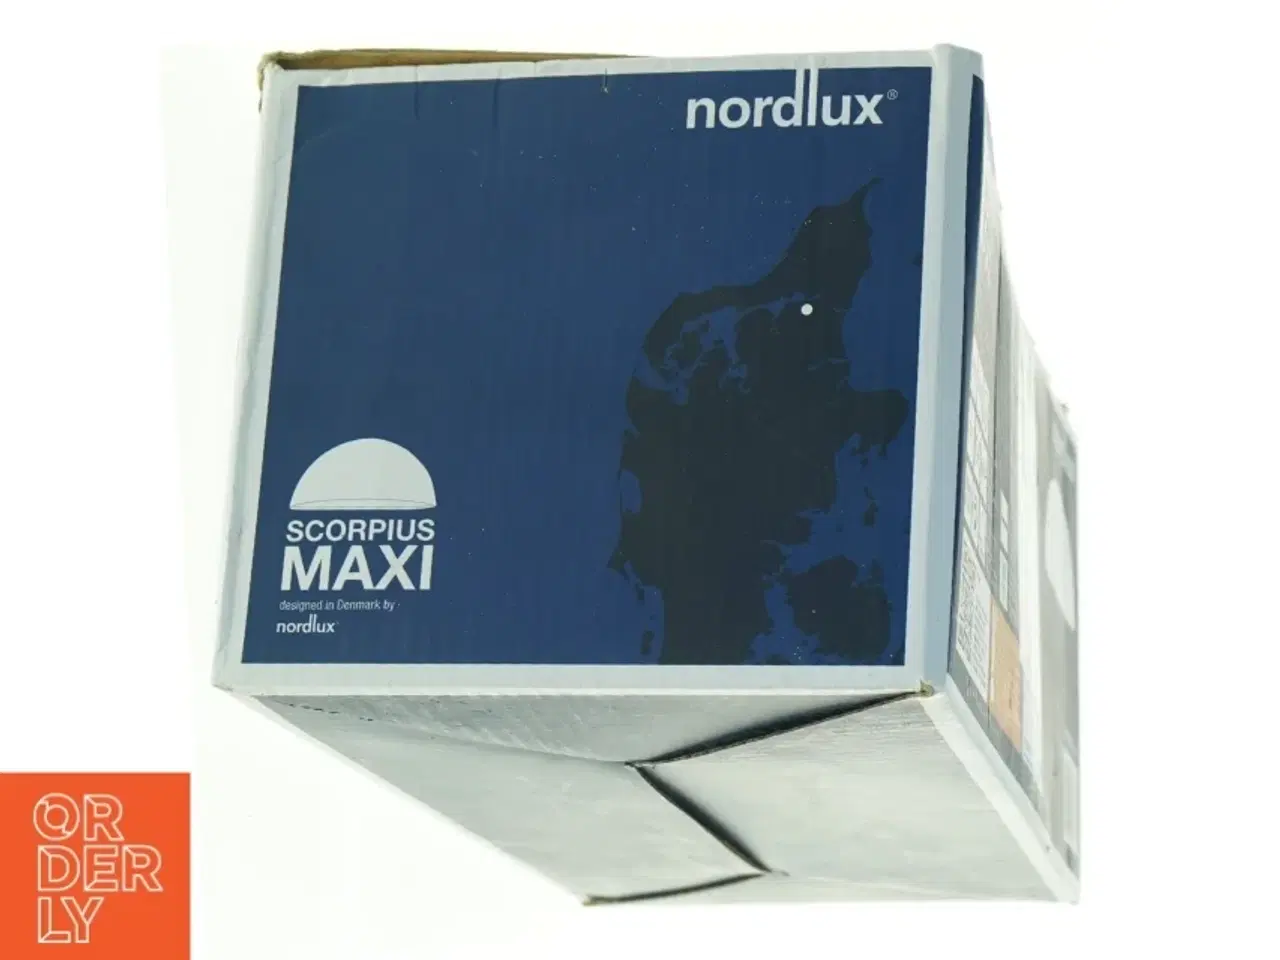 Billede 2 - Nordlux Scorpius Maxi udendørslampe fra Nordlux (str. 27 x 15 cm)